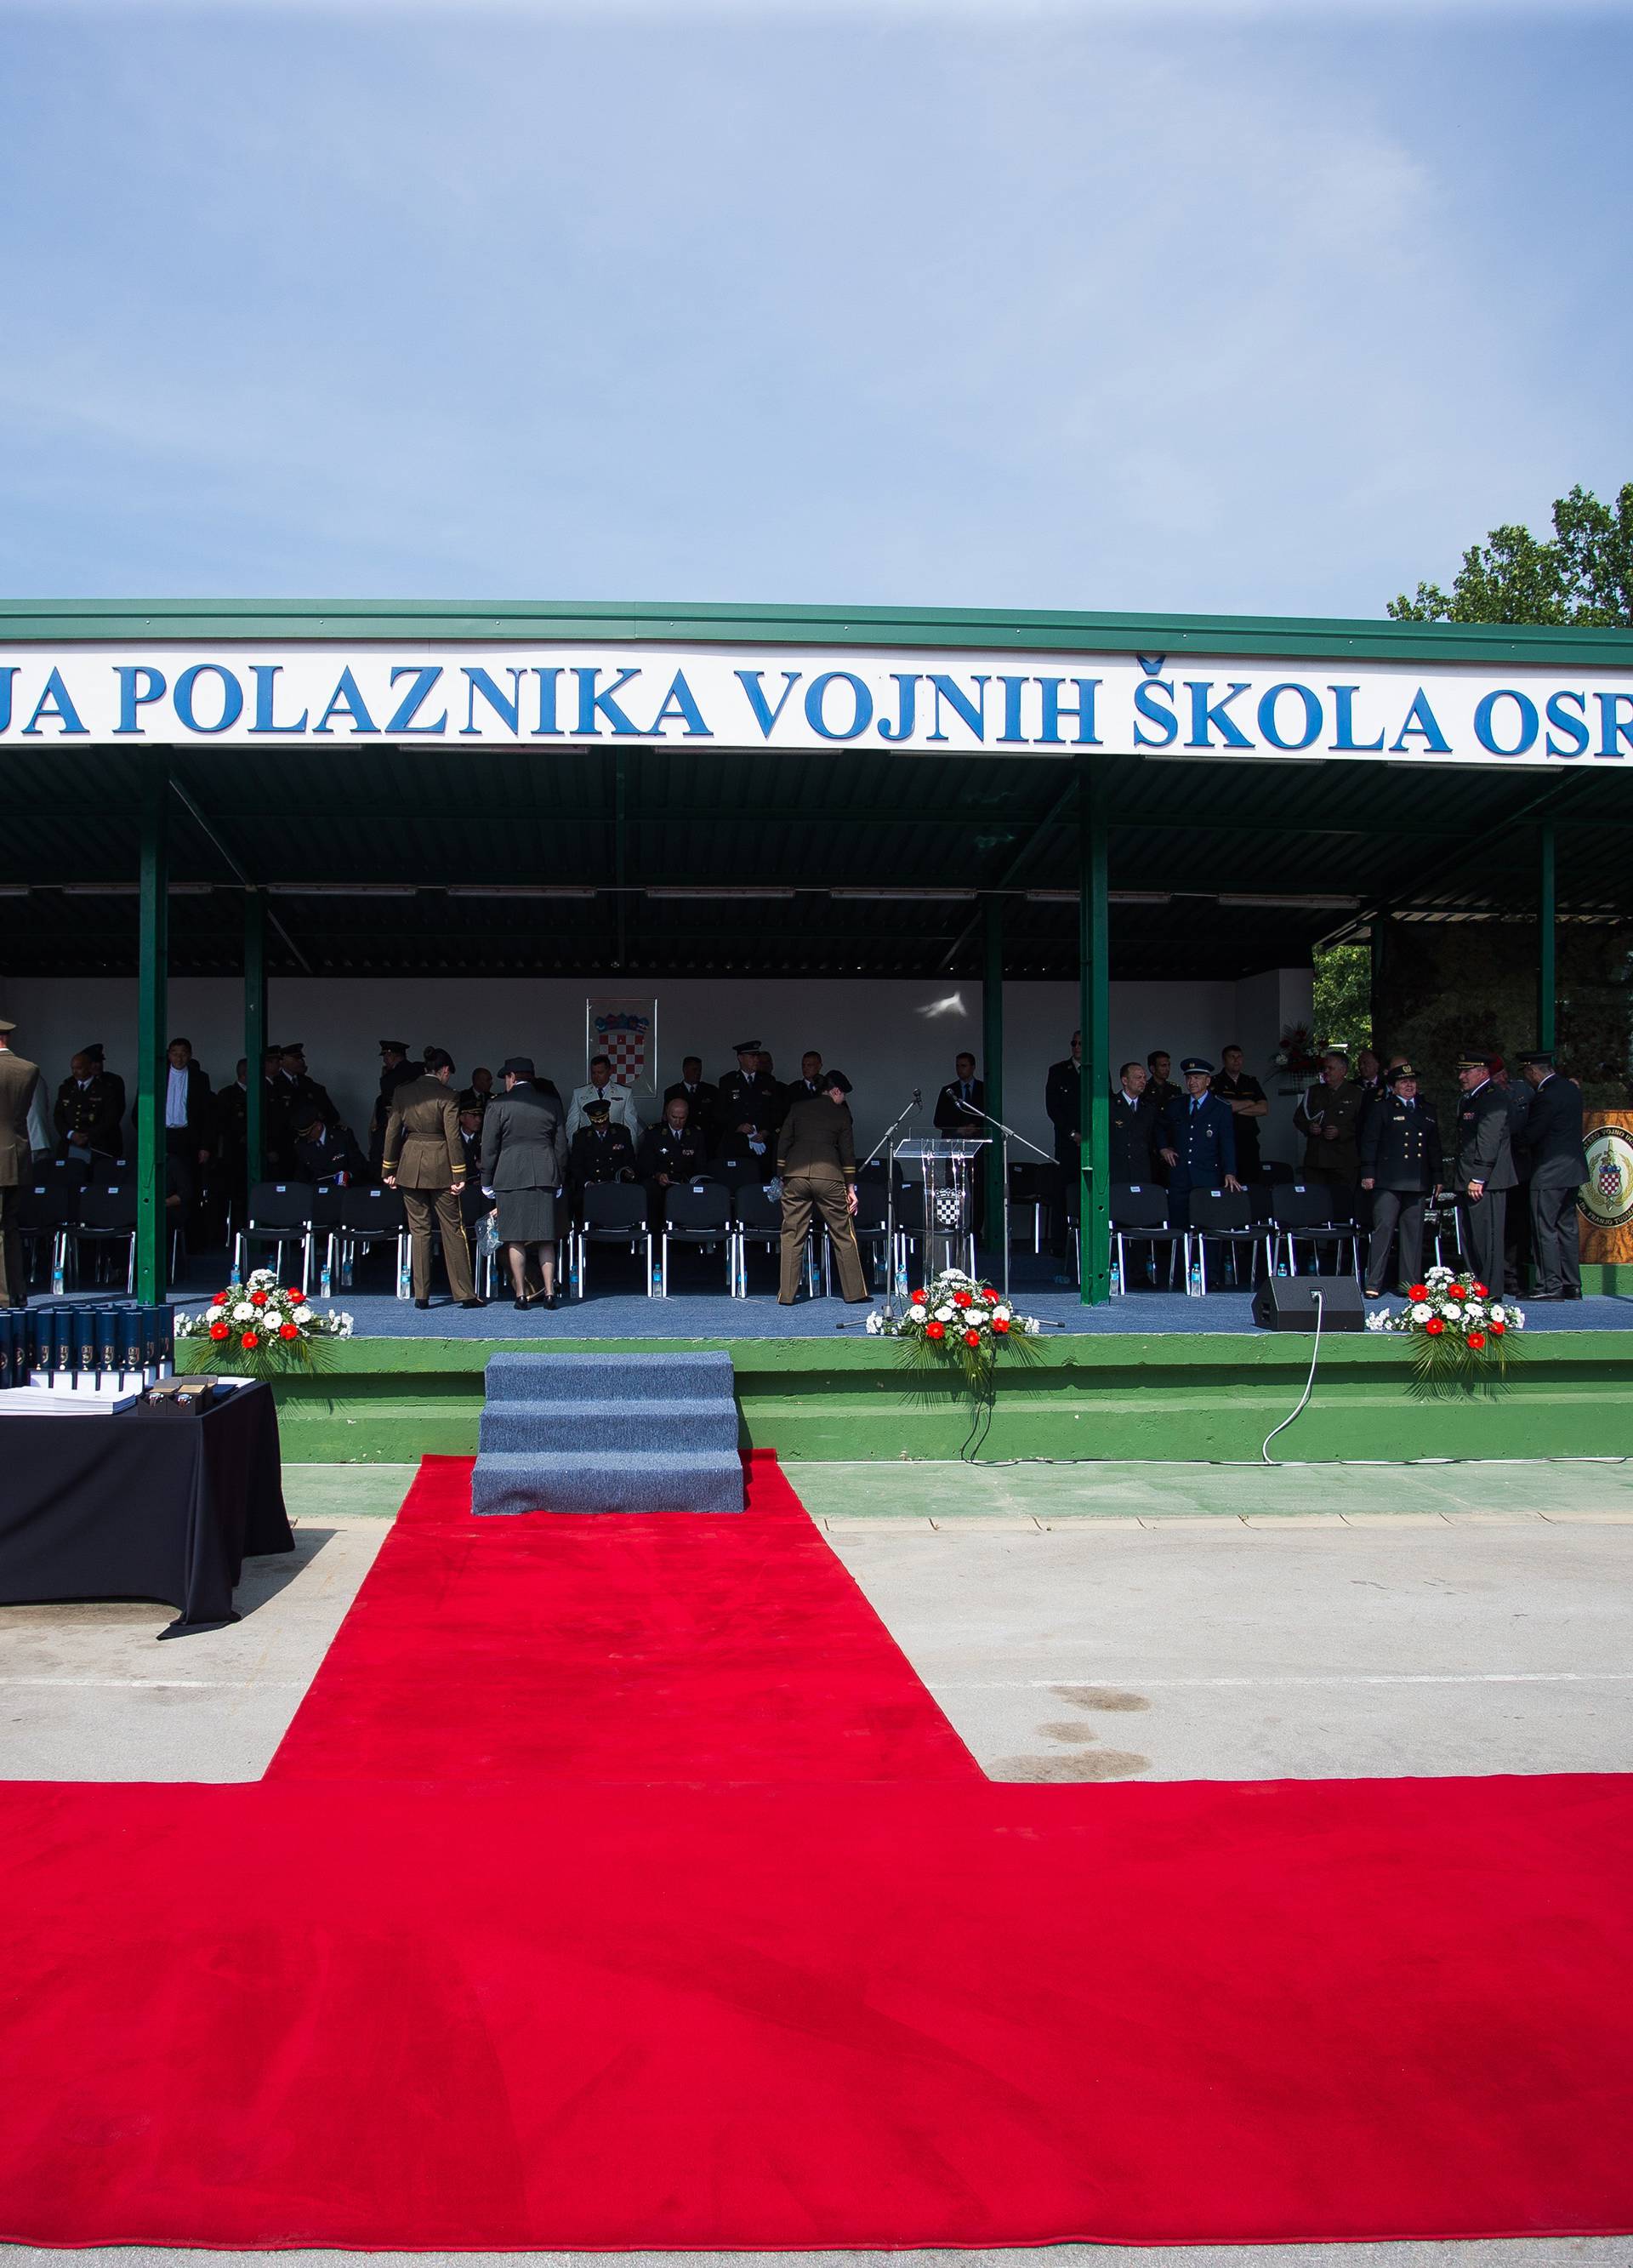 Vukovar: SveÄana promocija polaznika vojnih Å¡kola Hrvatskog vojnog uÄiliÅ¡ta Dr. Franjo TuÄman